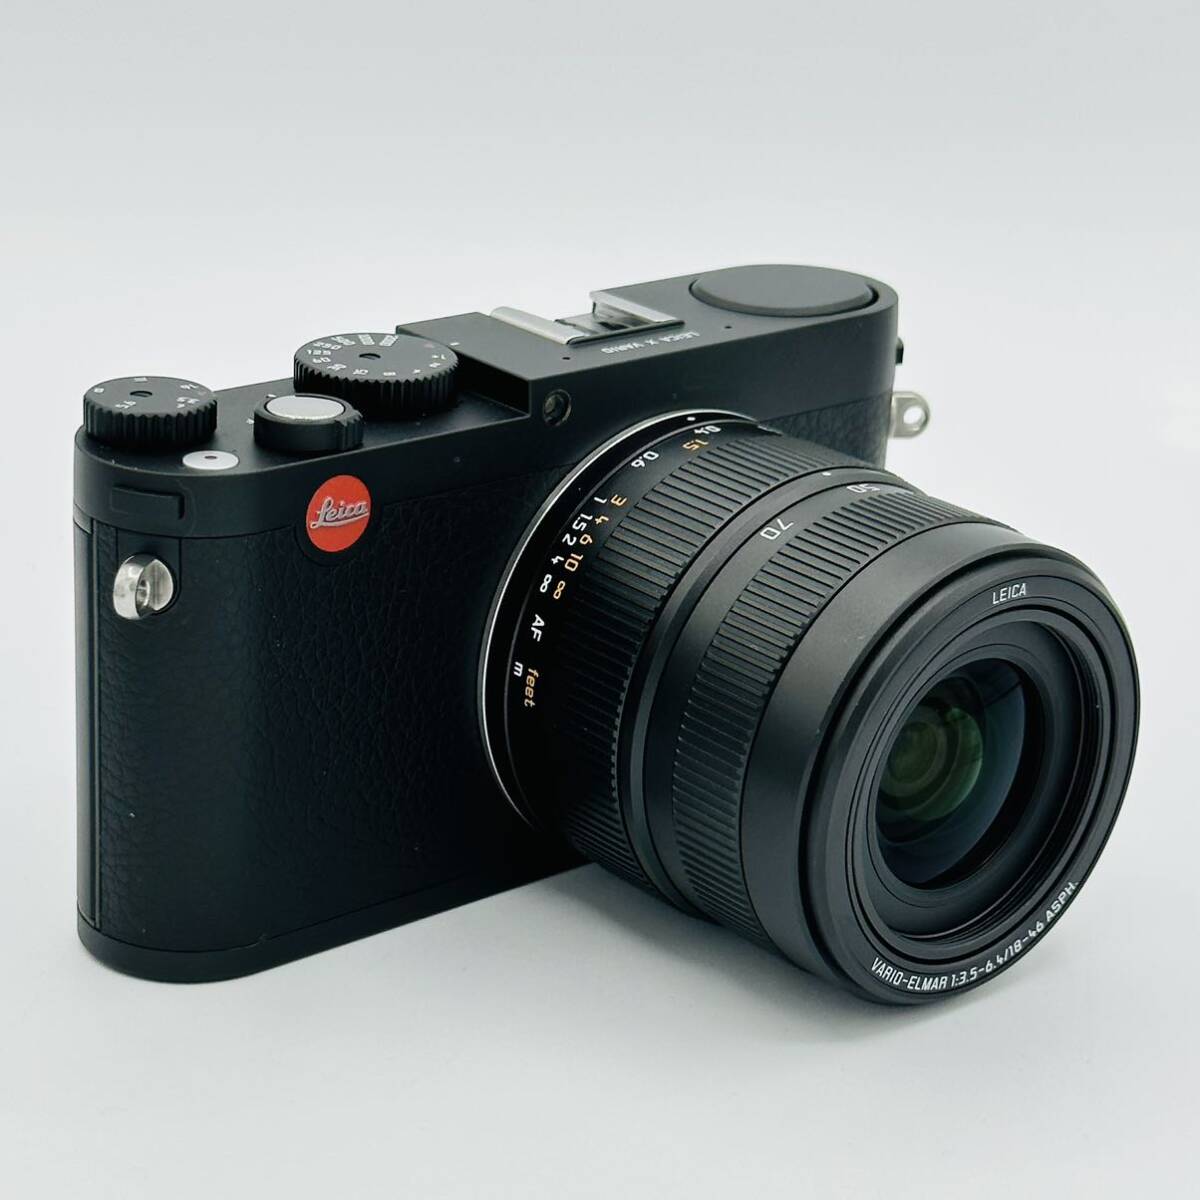 [ почти новый ]Leica цифровая камера Leica X шероховатость oTyp 107 1620 десять тысяч пикселей оптика 2.5 кратный zoom черный 18430